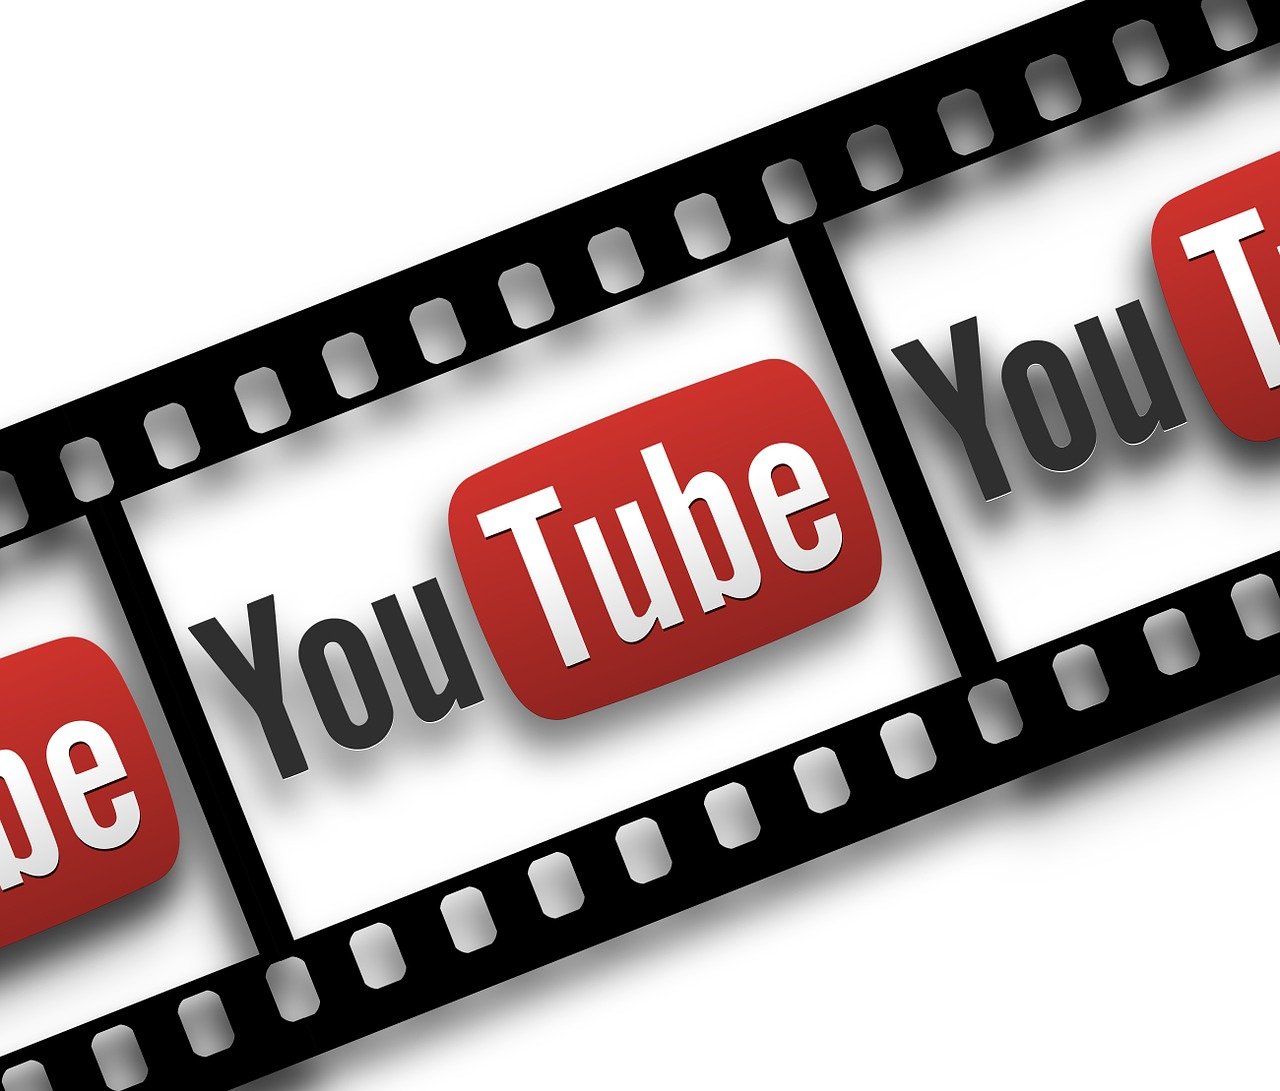 5 bí mật chưa được khai thác để nâng cao chiến lược tiếp thị kỹ thuật số của bạn trên YouTube